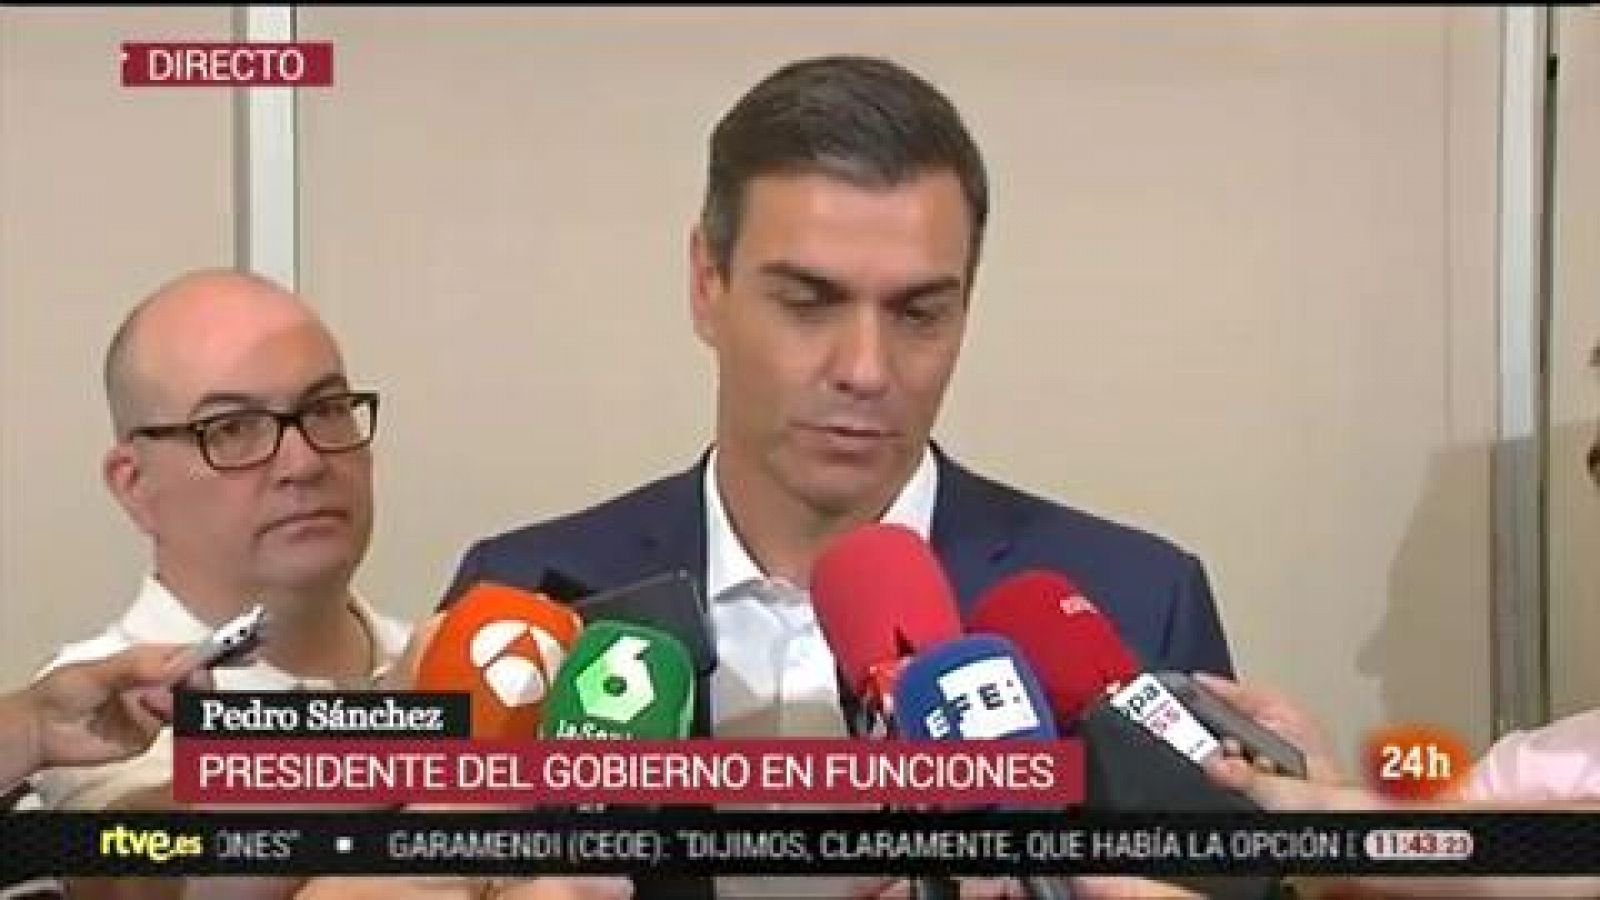 Sánchez anuncia que el PSOE buscará un acuerdo para su investidura en base a una "propuesta abierta" a finales de agosto